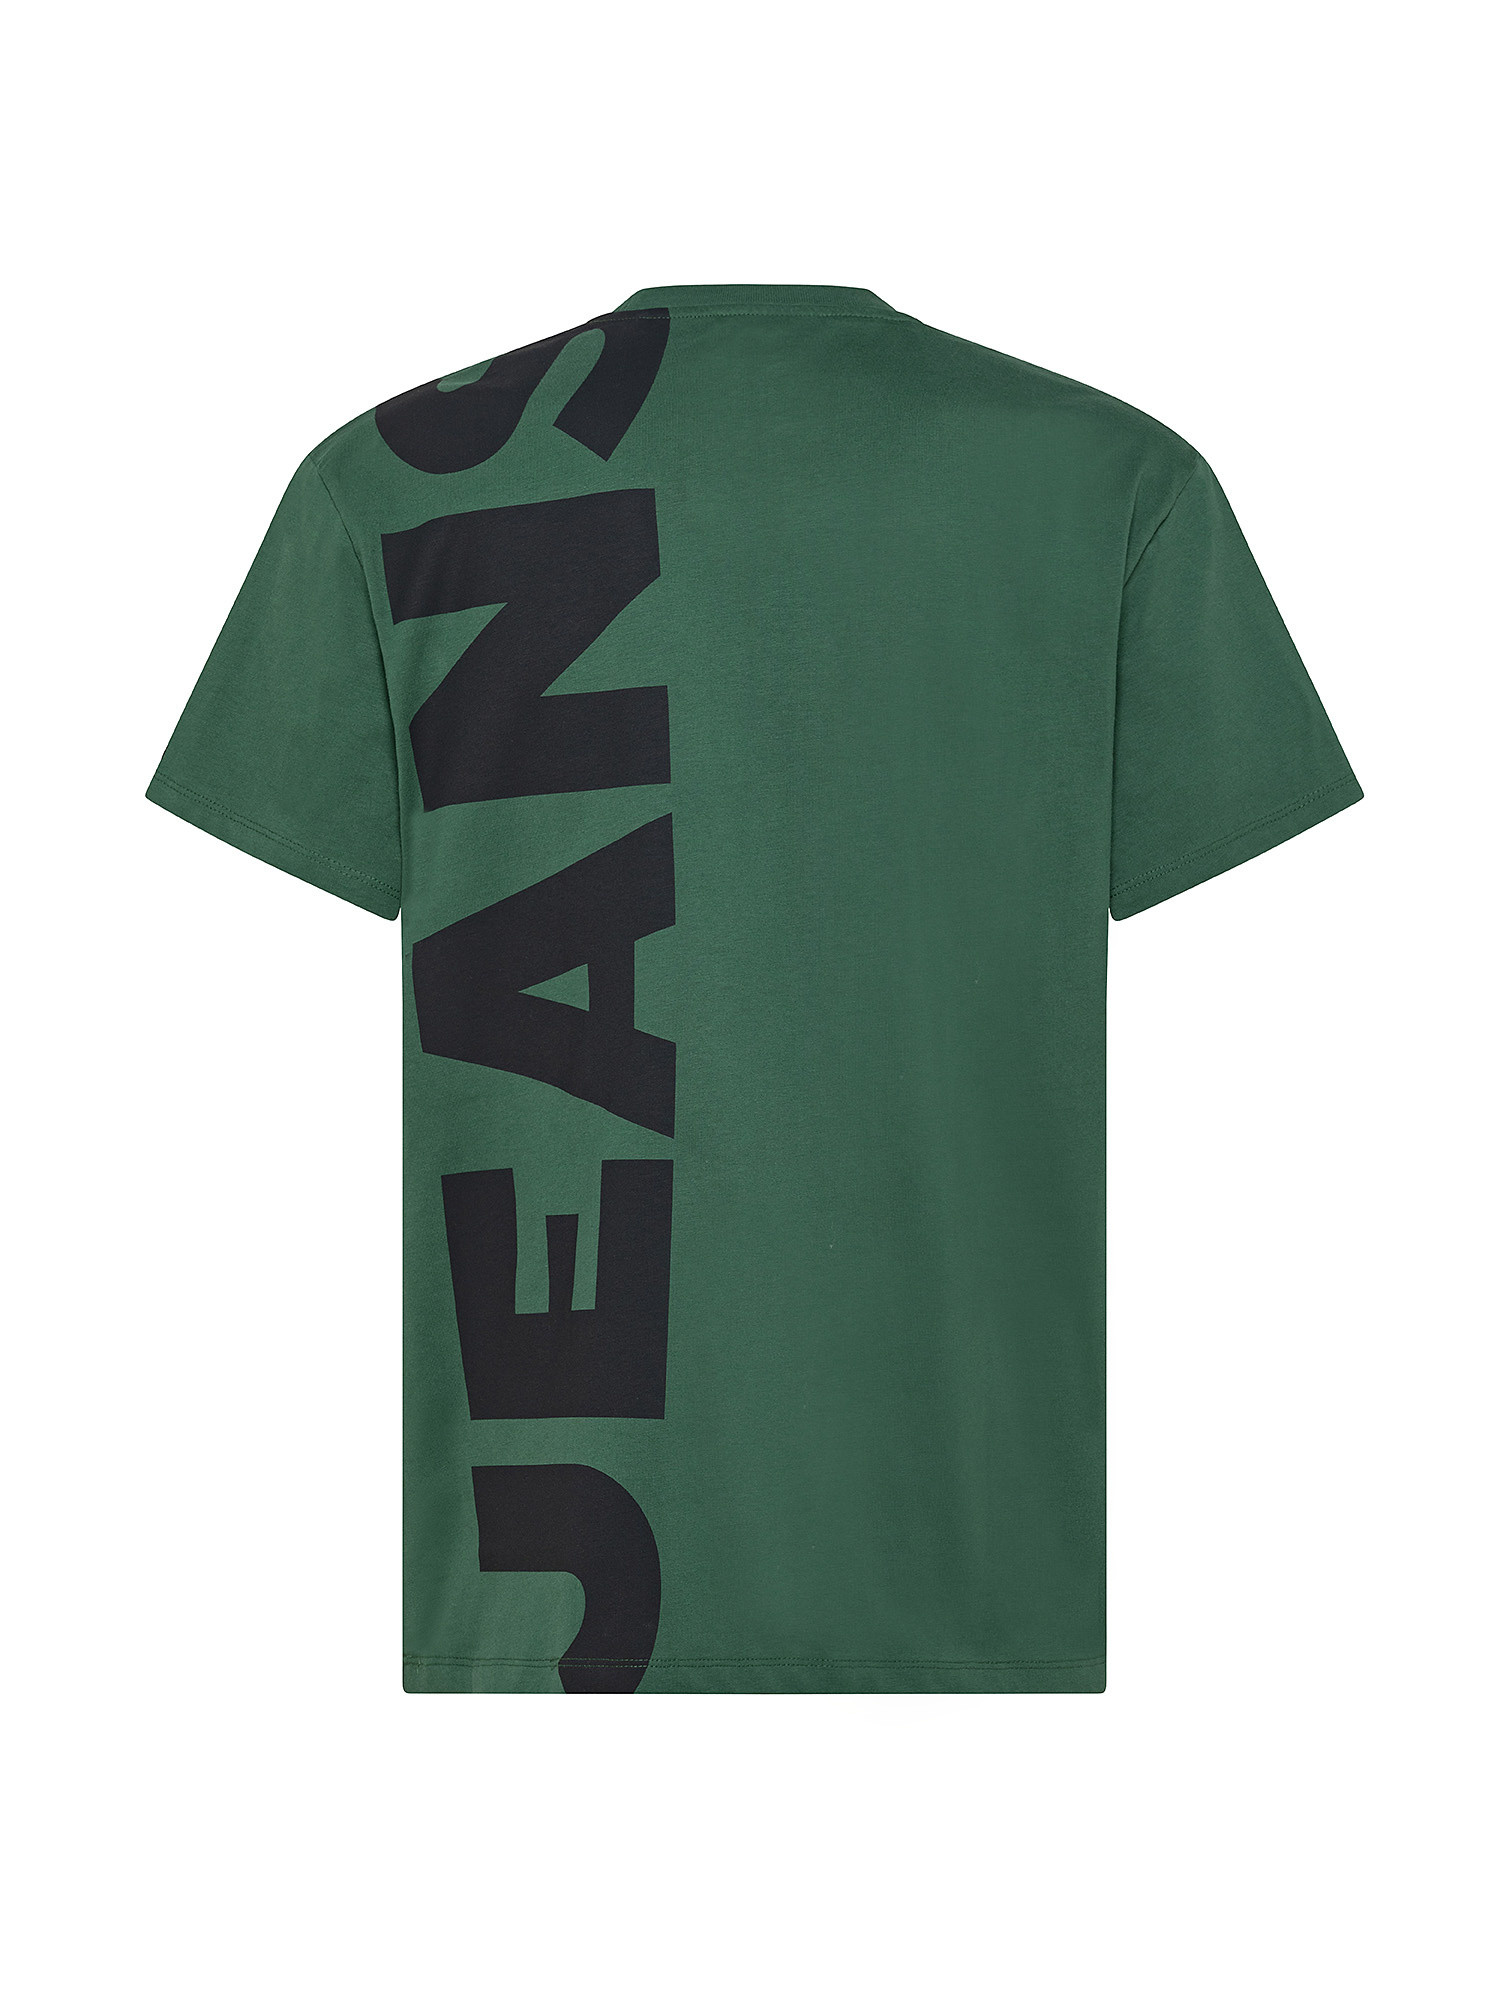 Shedrick cotton T-shirt, Green, large image number 1